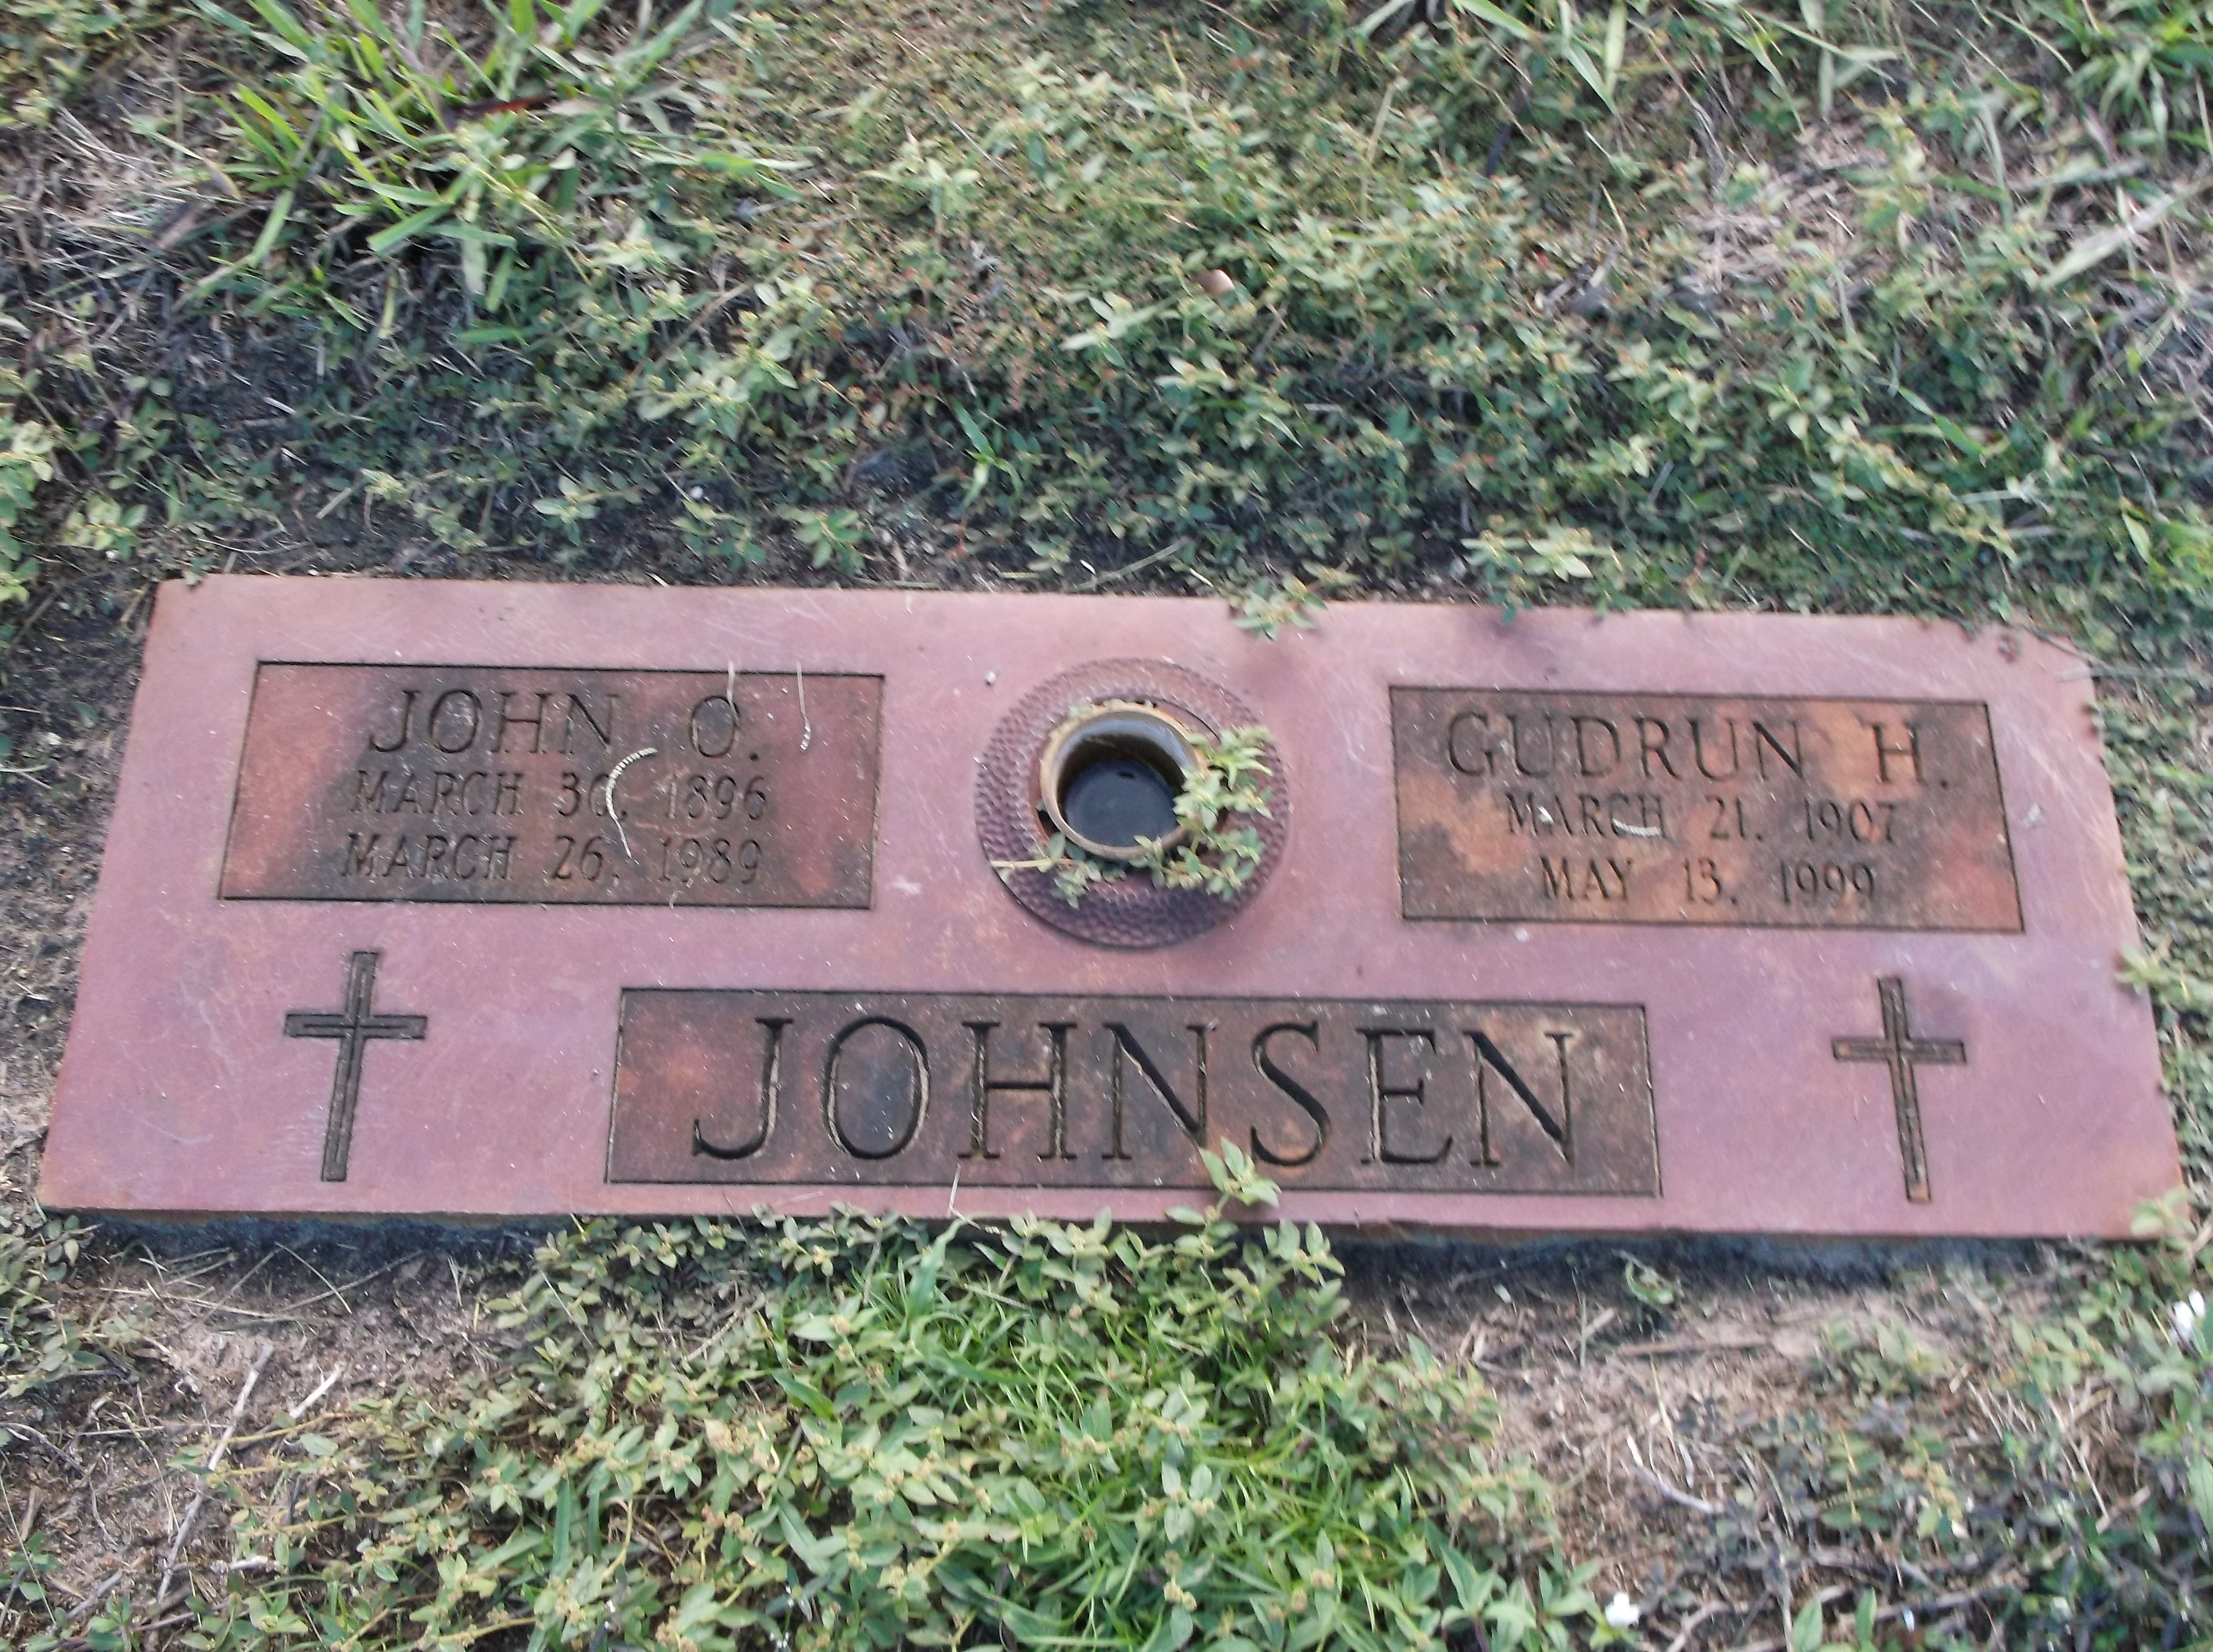 John O Johnsen